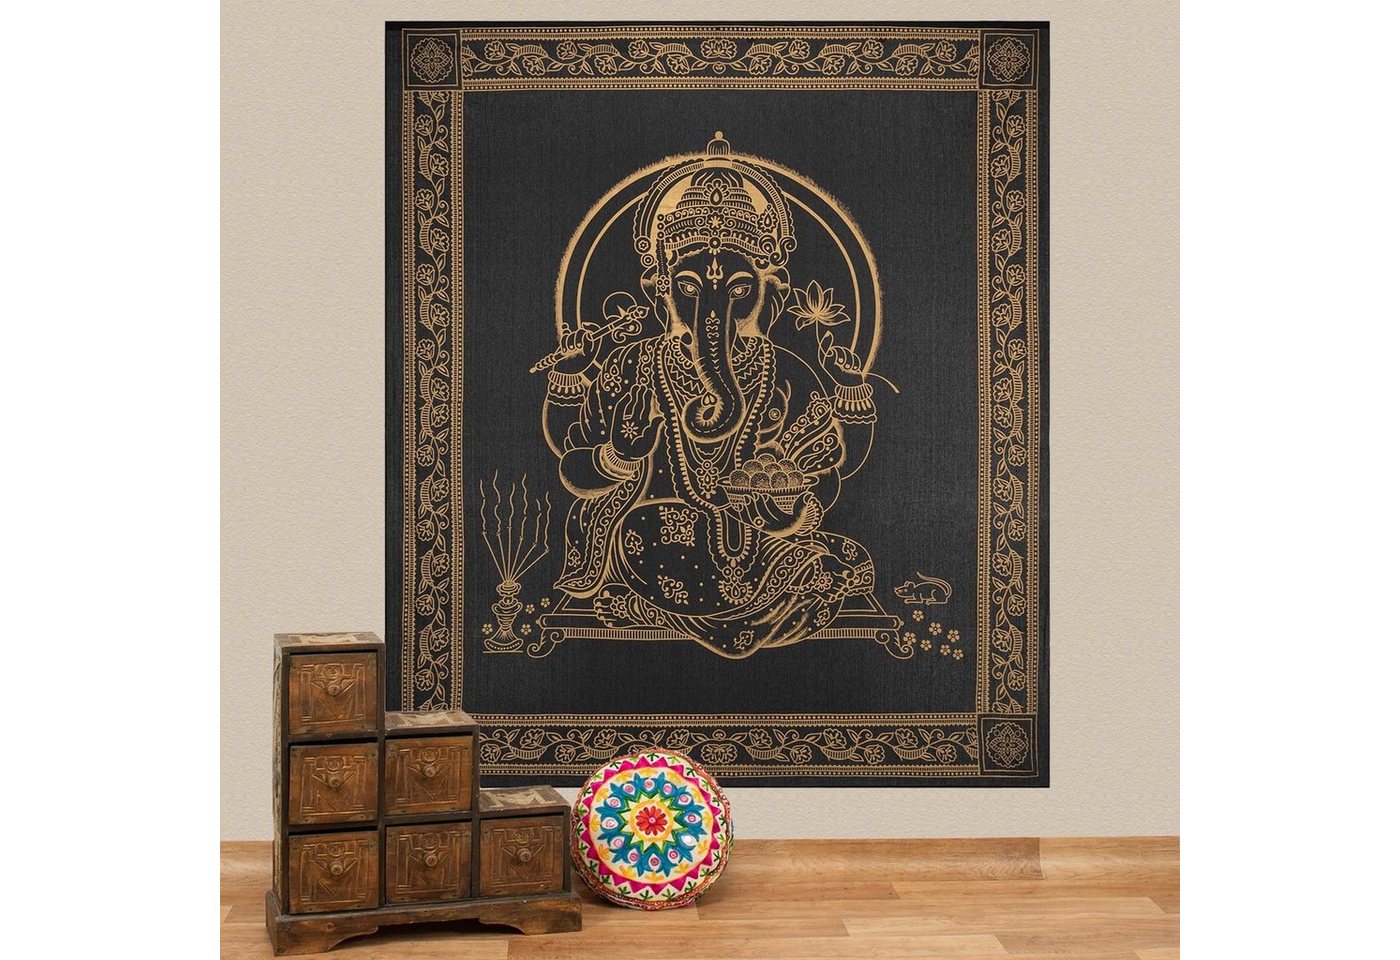 Wandteppich Tagesdecke Wandbehang Deko Tuch Lord Ganesha Gold ca. 200 x 230cm, KUNST UND MAGIE von KUNST UND MAGIE